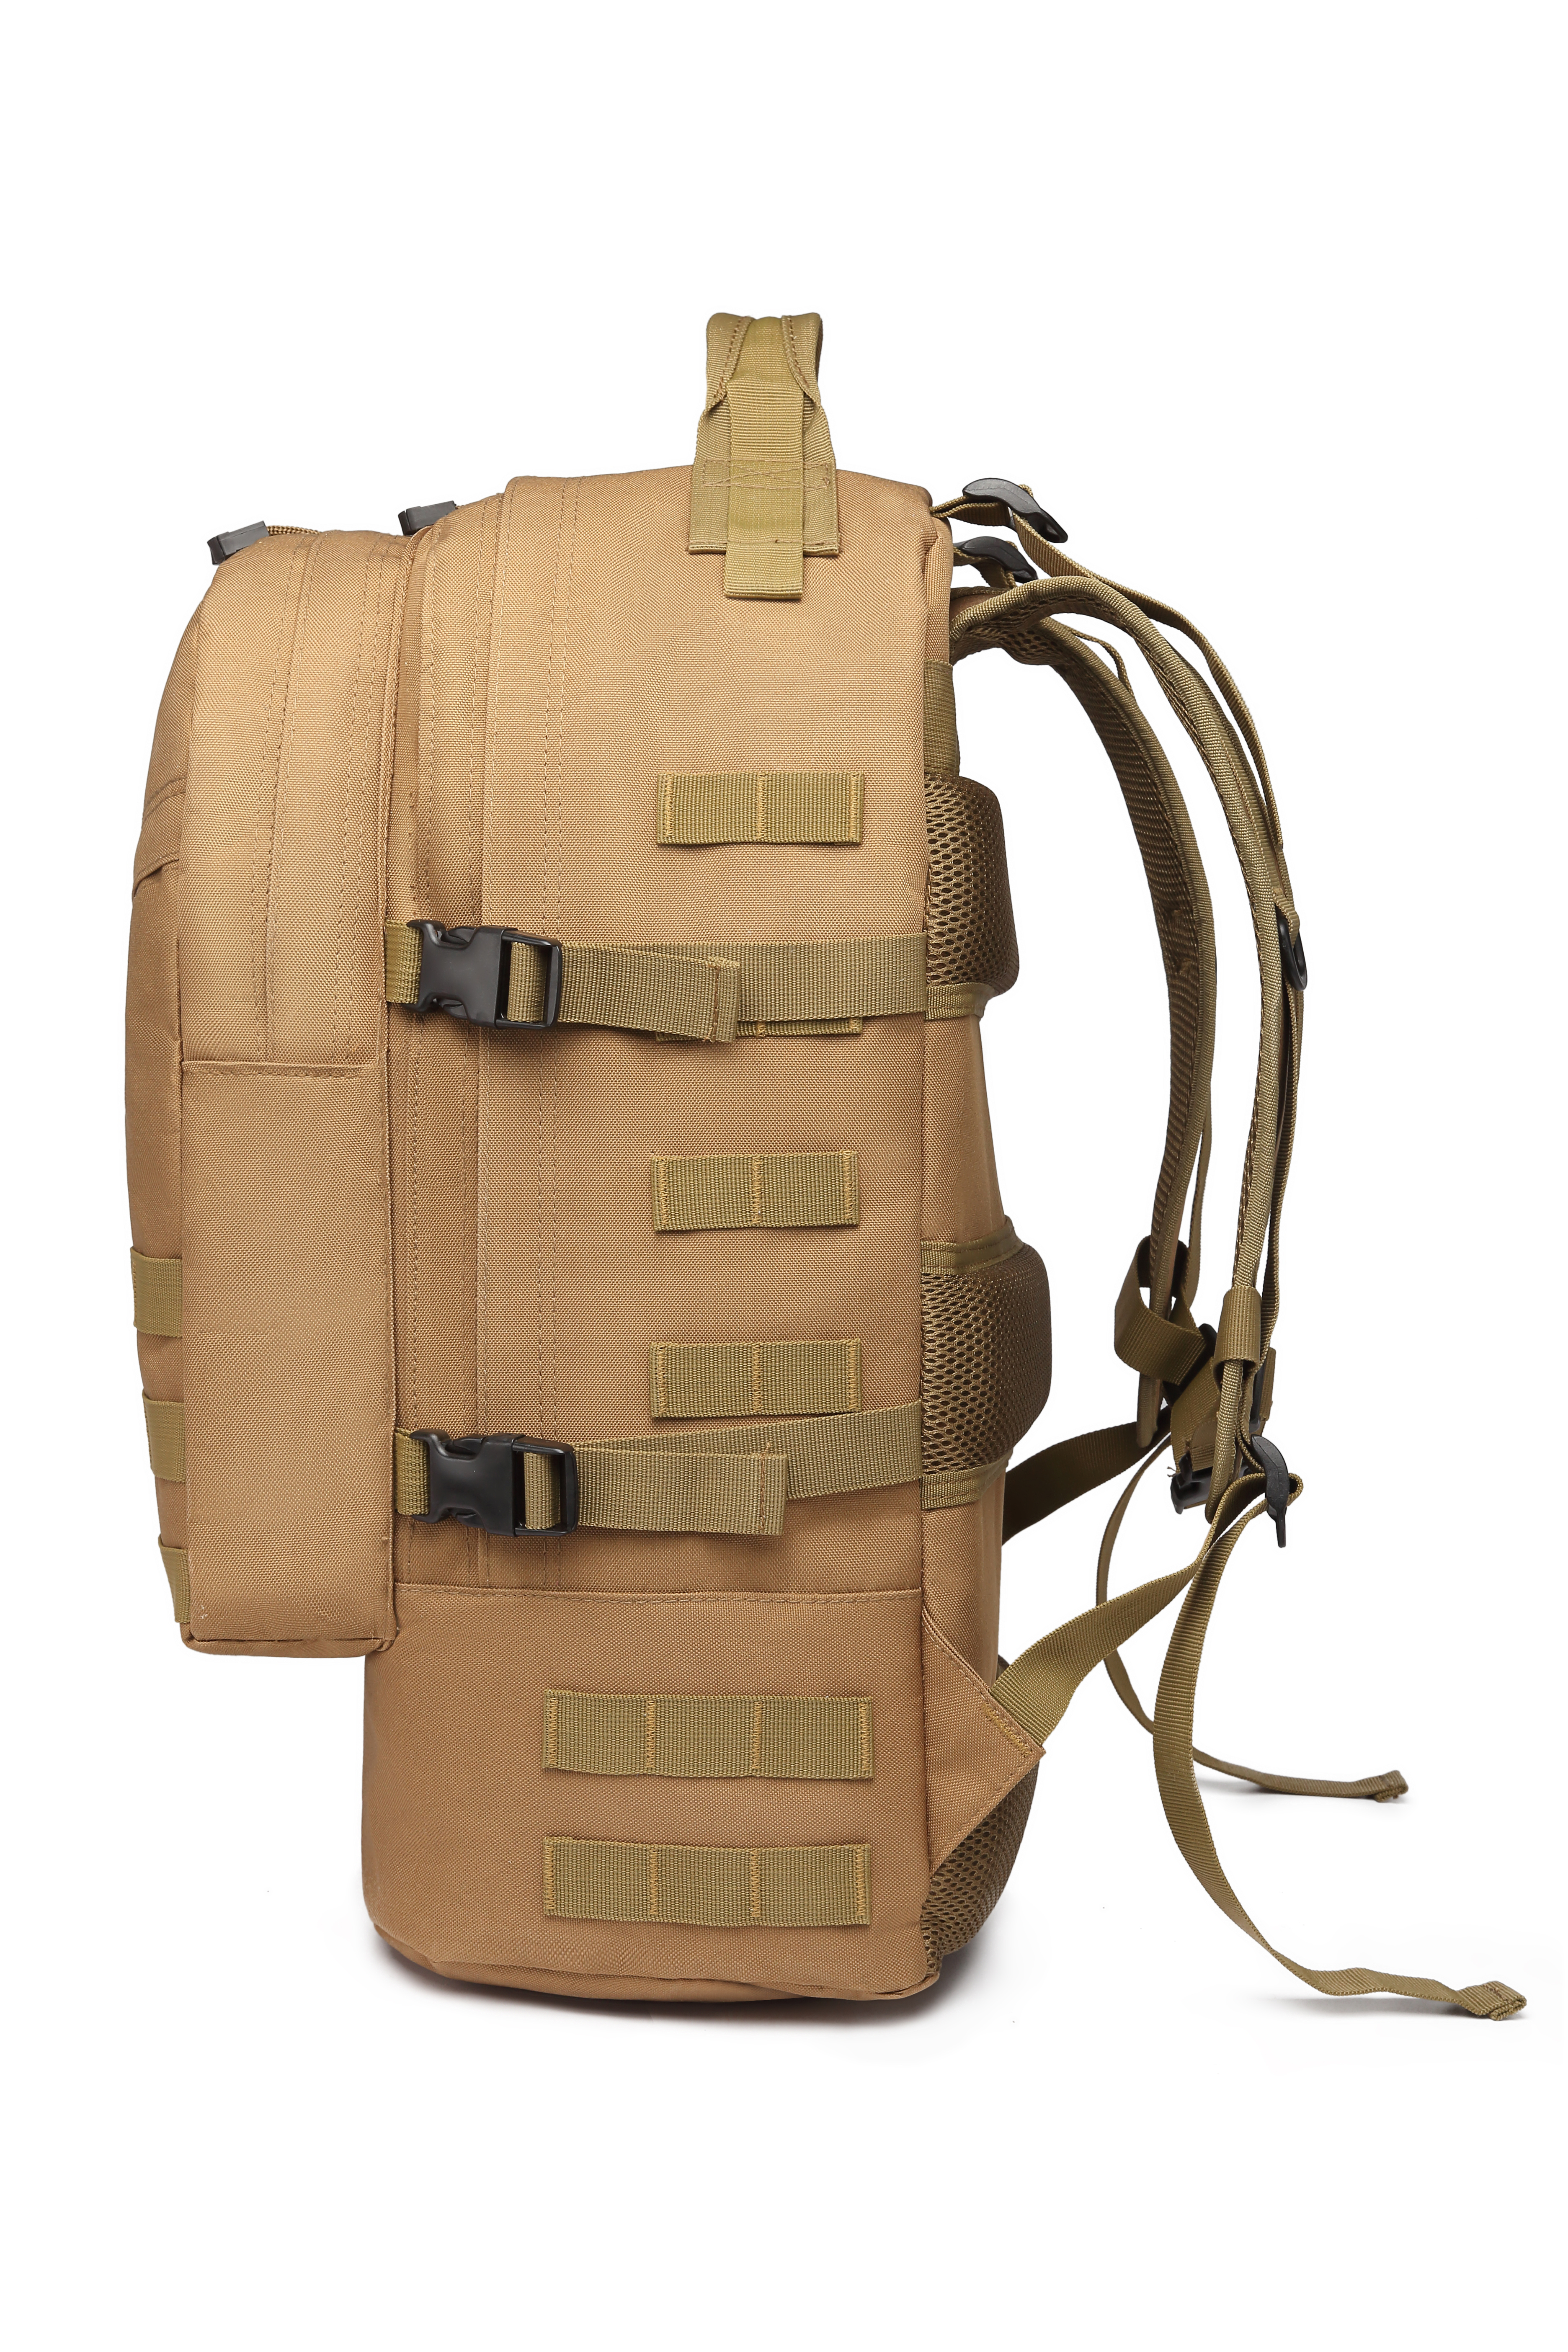 Tactical backpack 25L #BP419